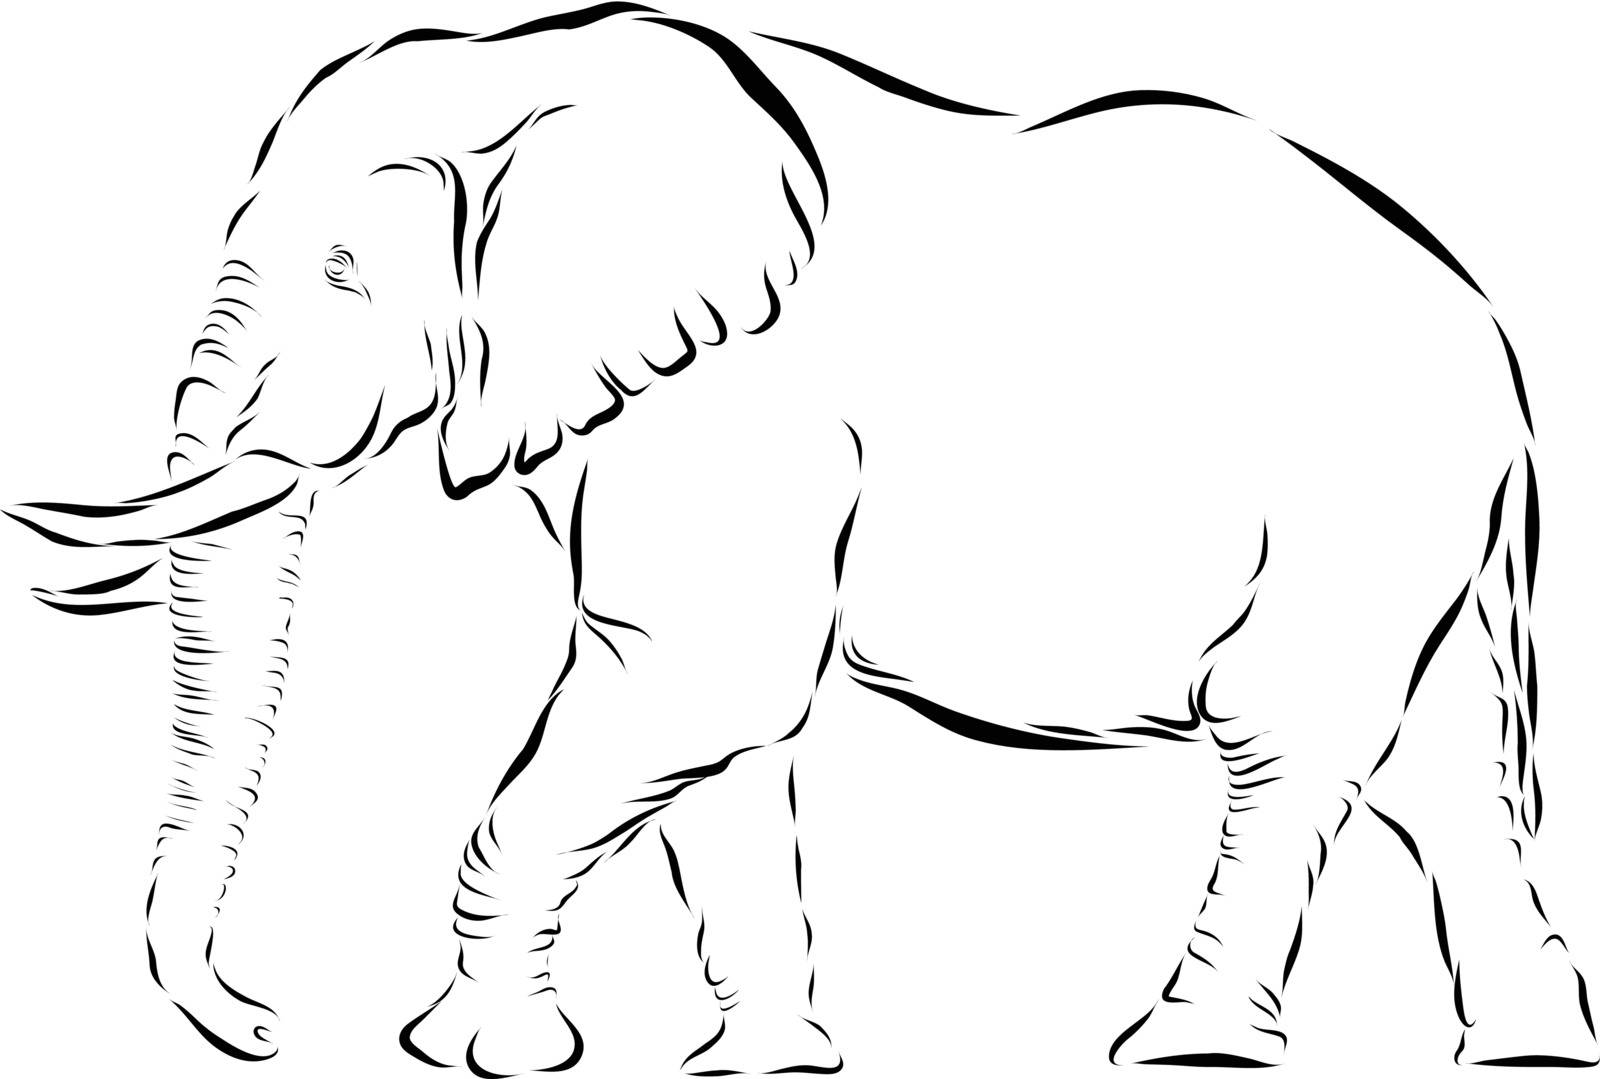 Elephant Icon by donvanstaden